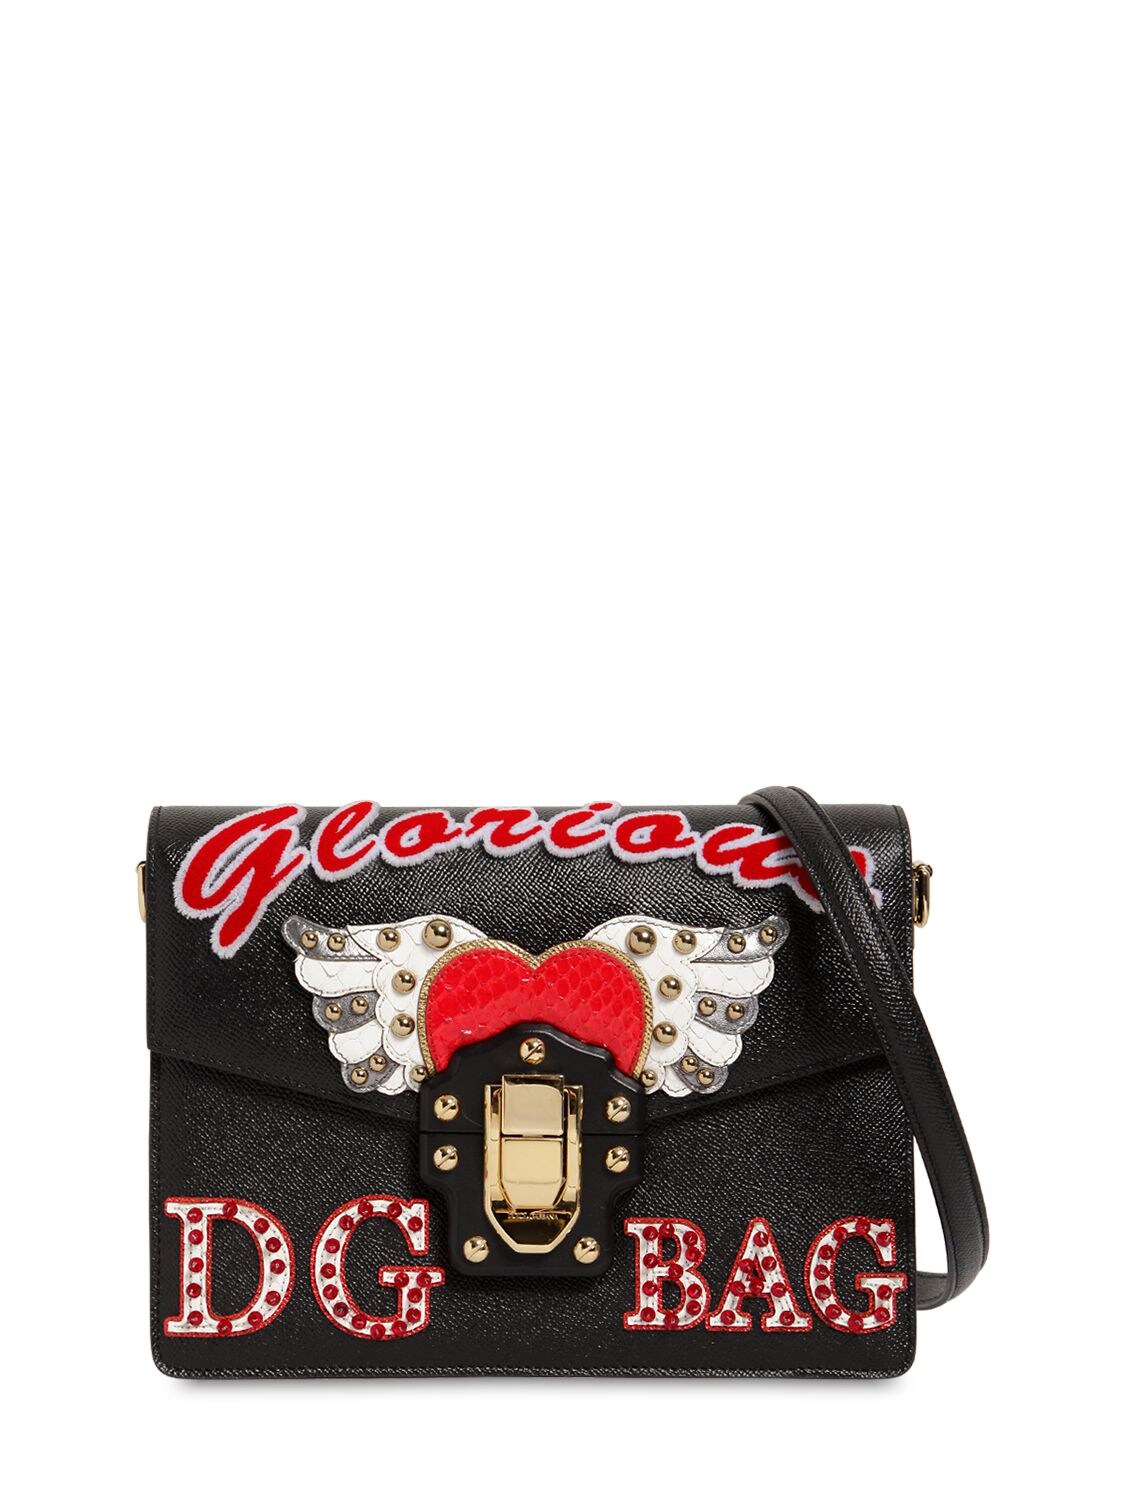 Dolce & Gabbana Lucia Leather Shoulder Bag In Black